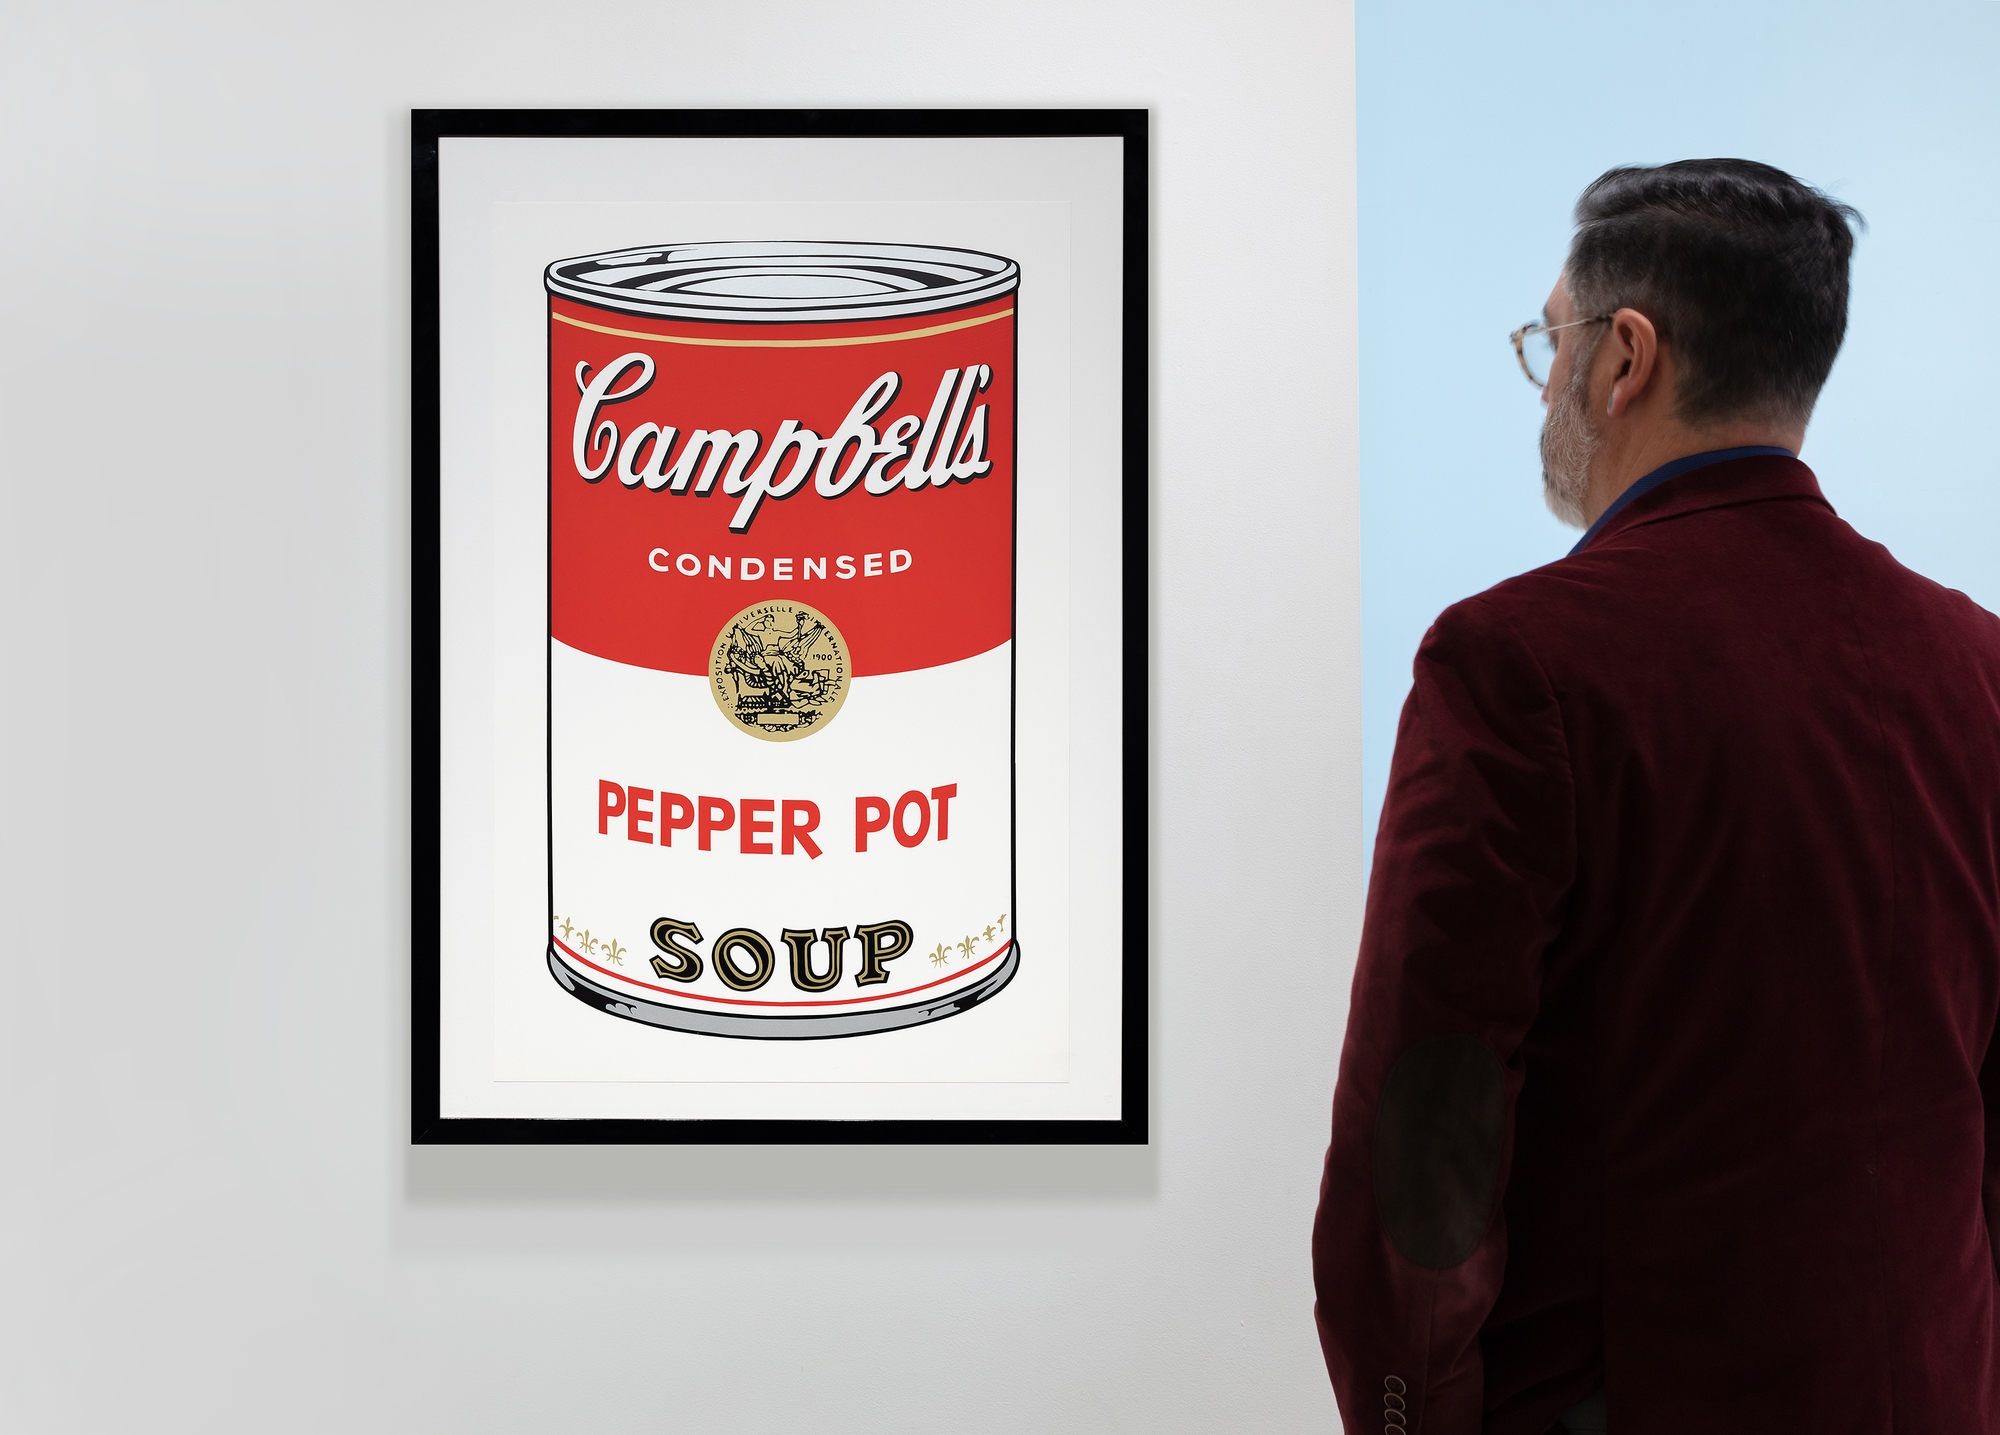 アンディ・ウォーホルのキャンベル・スープ缶シリーズは、彼のキャリアとポップ・アート・ムーブメントにおける極めて重要な瞬間である。それぞれ異なる味を描いた32枚のキャンバスからなるこのシリーズは、ありふれた日常的な消費財をハイアートの地位へと昇華させ、アートの世界に革命をもたらした。1968年に発表されたスクリーンプリントの「ペッパー・ポット」は、大量生産と消費文化の特徴である、鮮やかで平坦な色彩と繰り返されるイメージという彼の特徴的なスタイルを採用している。商業的技法であるスクリーン・プリントは、ハイ・アートと商業アートの境界線を曖昧にし、芸術的価値観や認識に挑戦するウォーホルの関心と一致している。